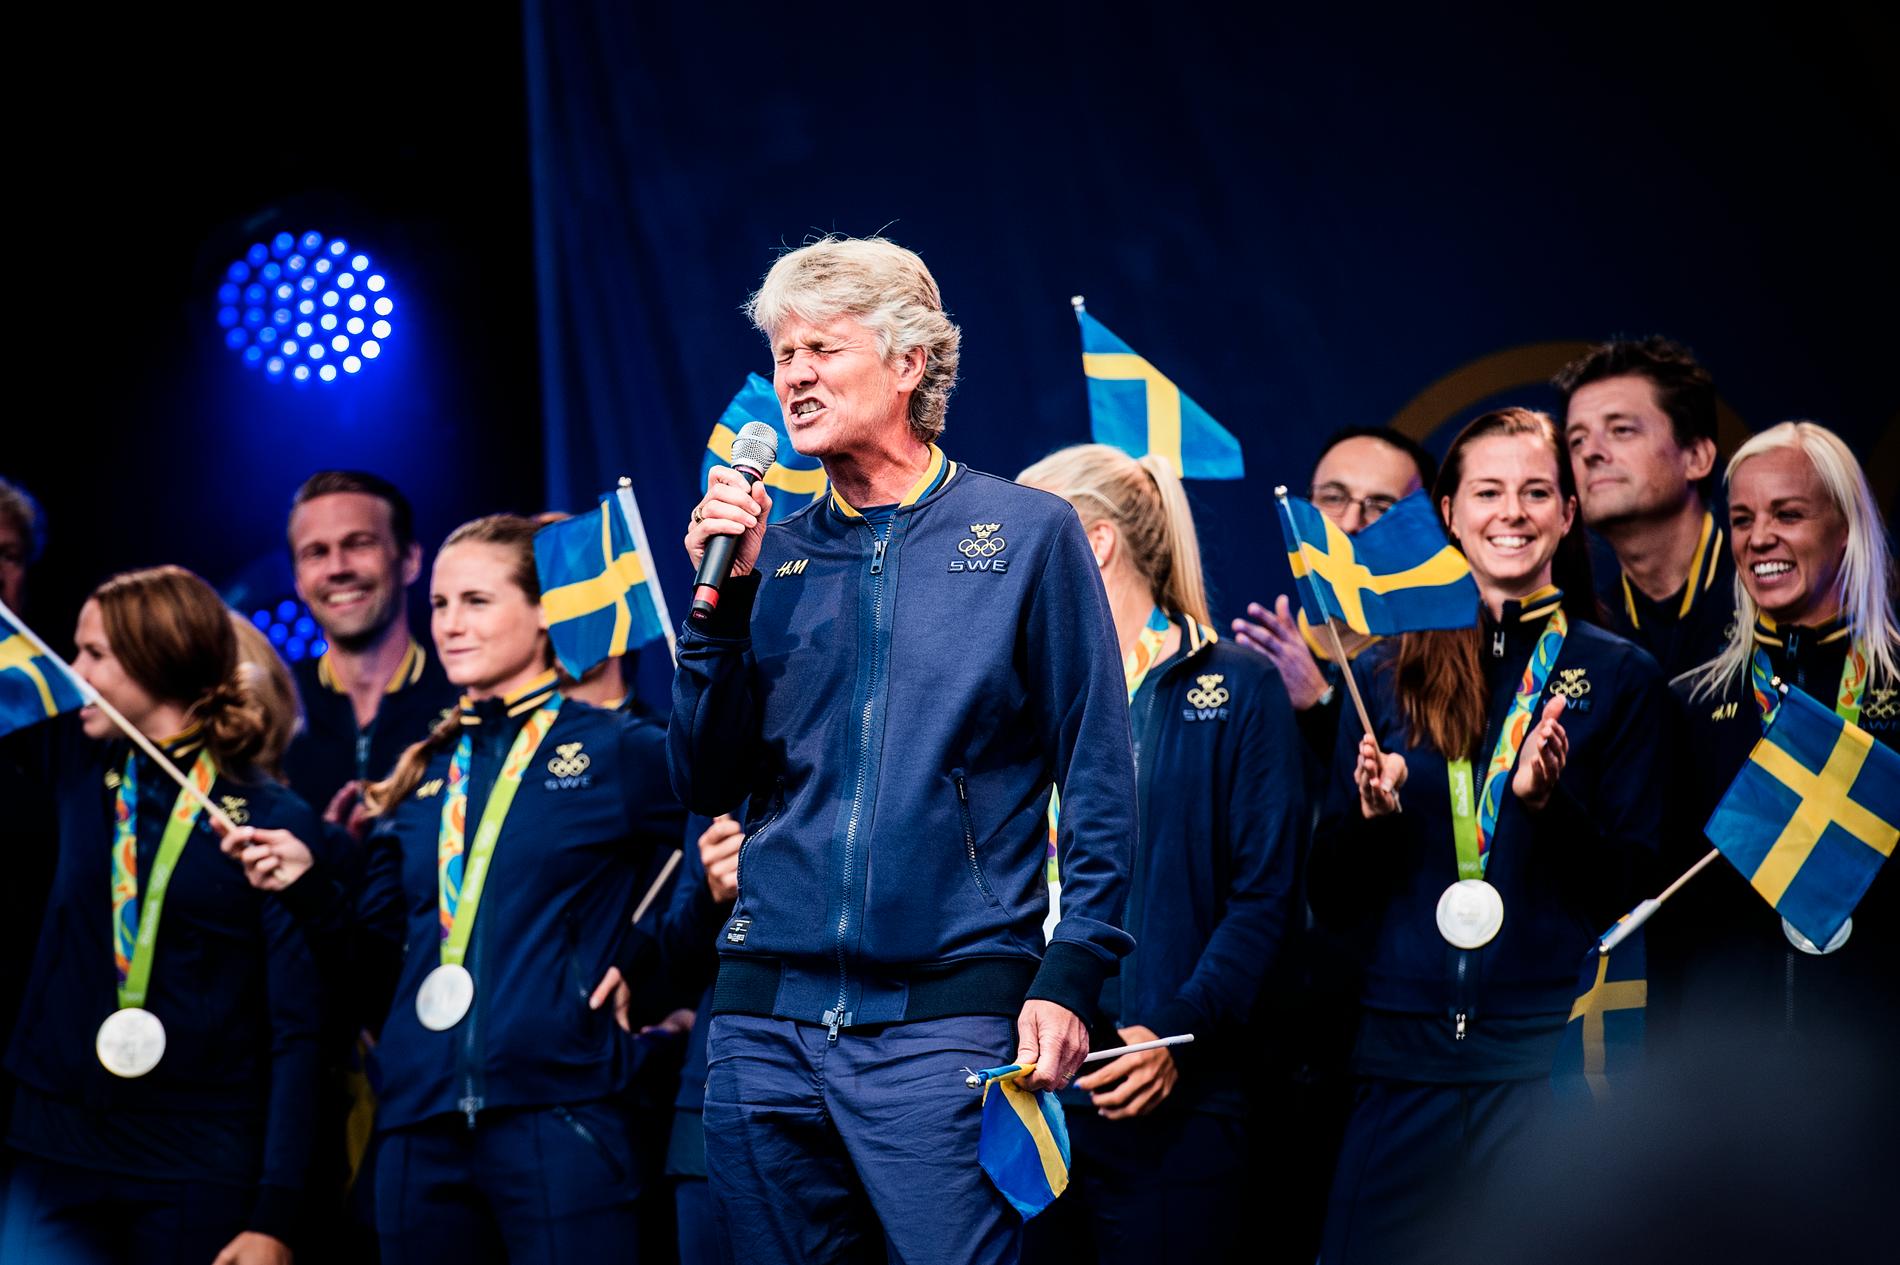 Augusti 2016 – Sverige vinner OS-silver. Succé, trots ännu en förlust mot Tyskland.